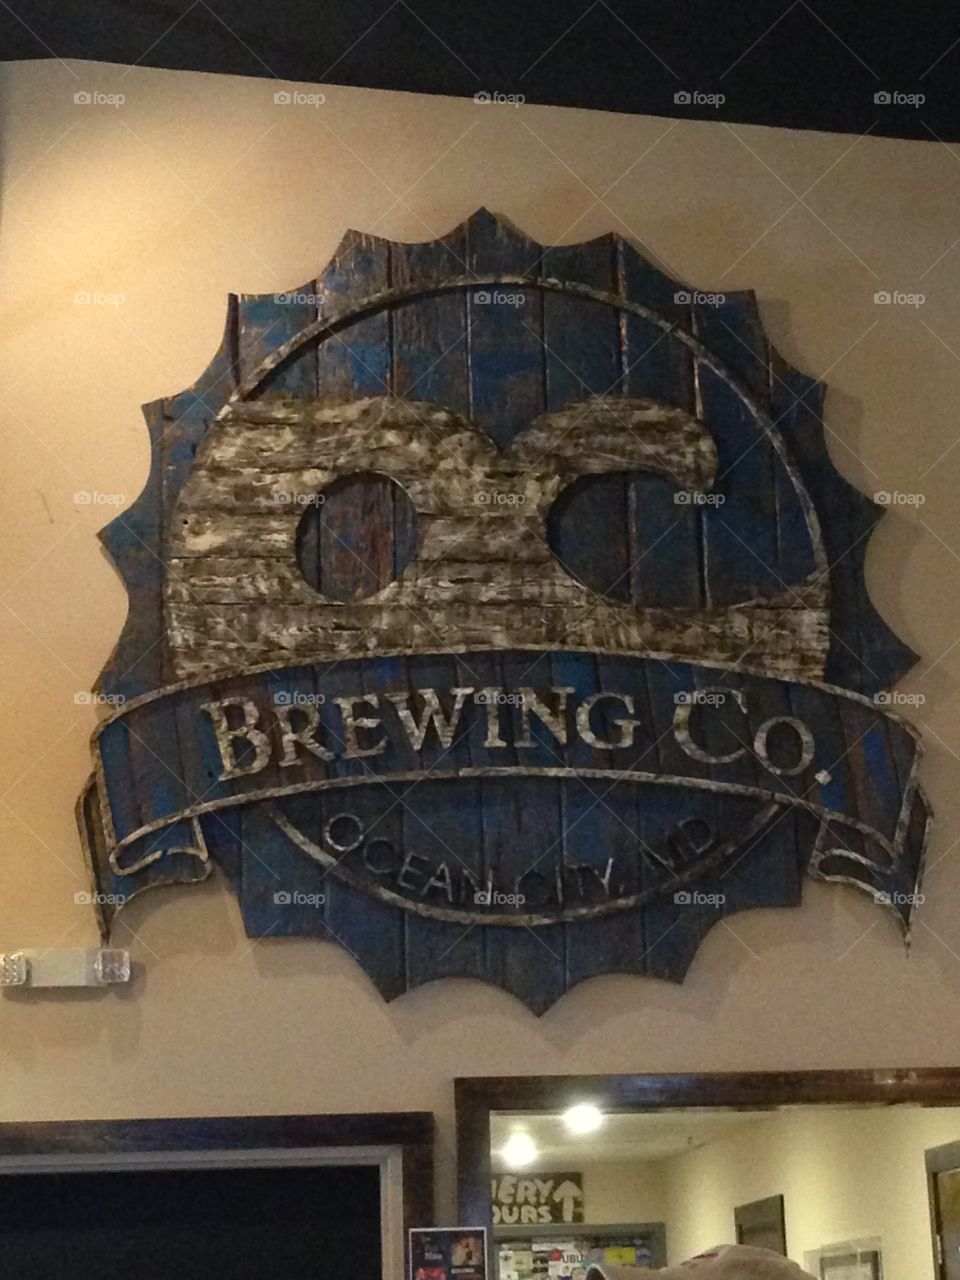 Ocean city brewing company